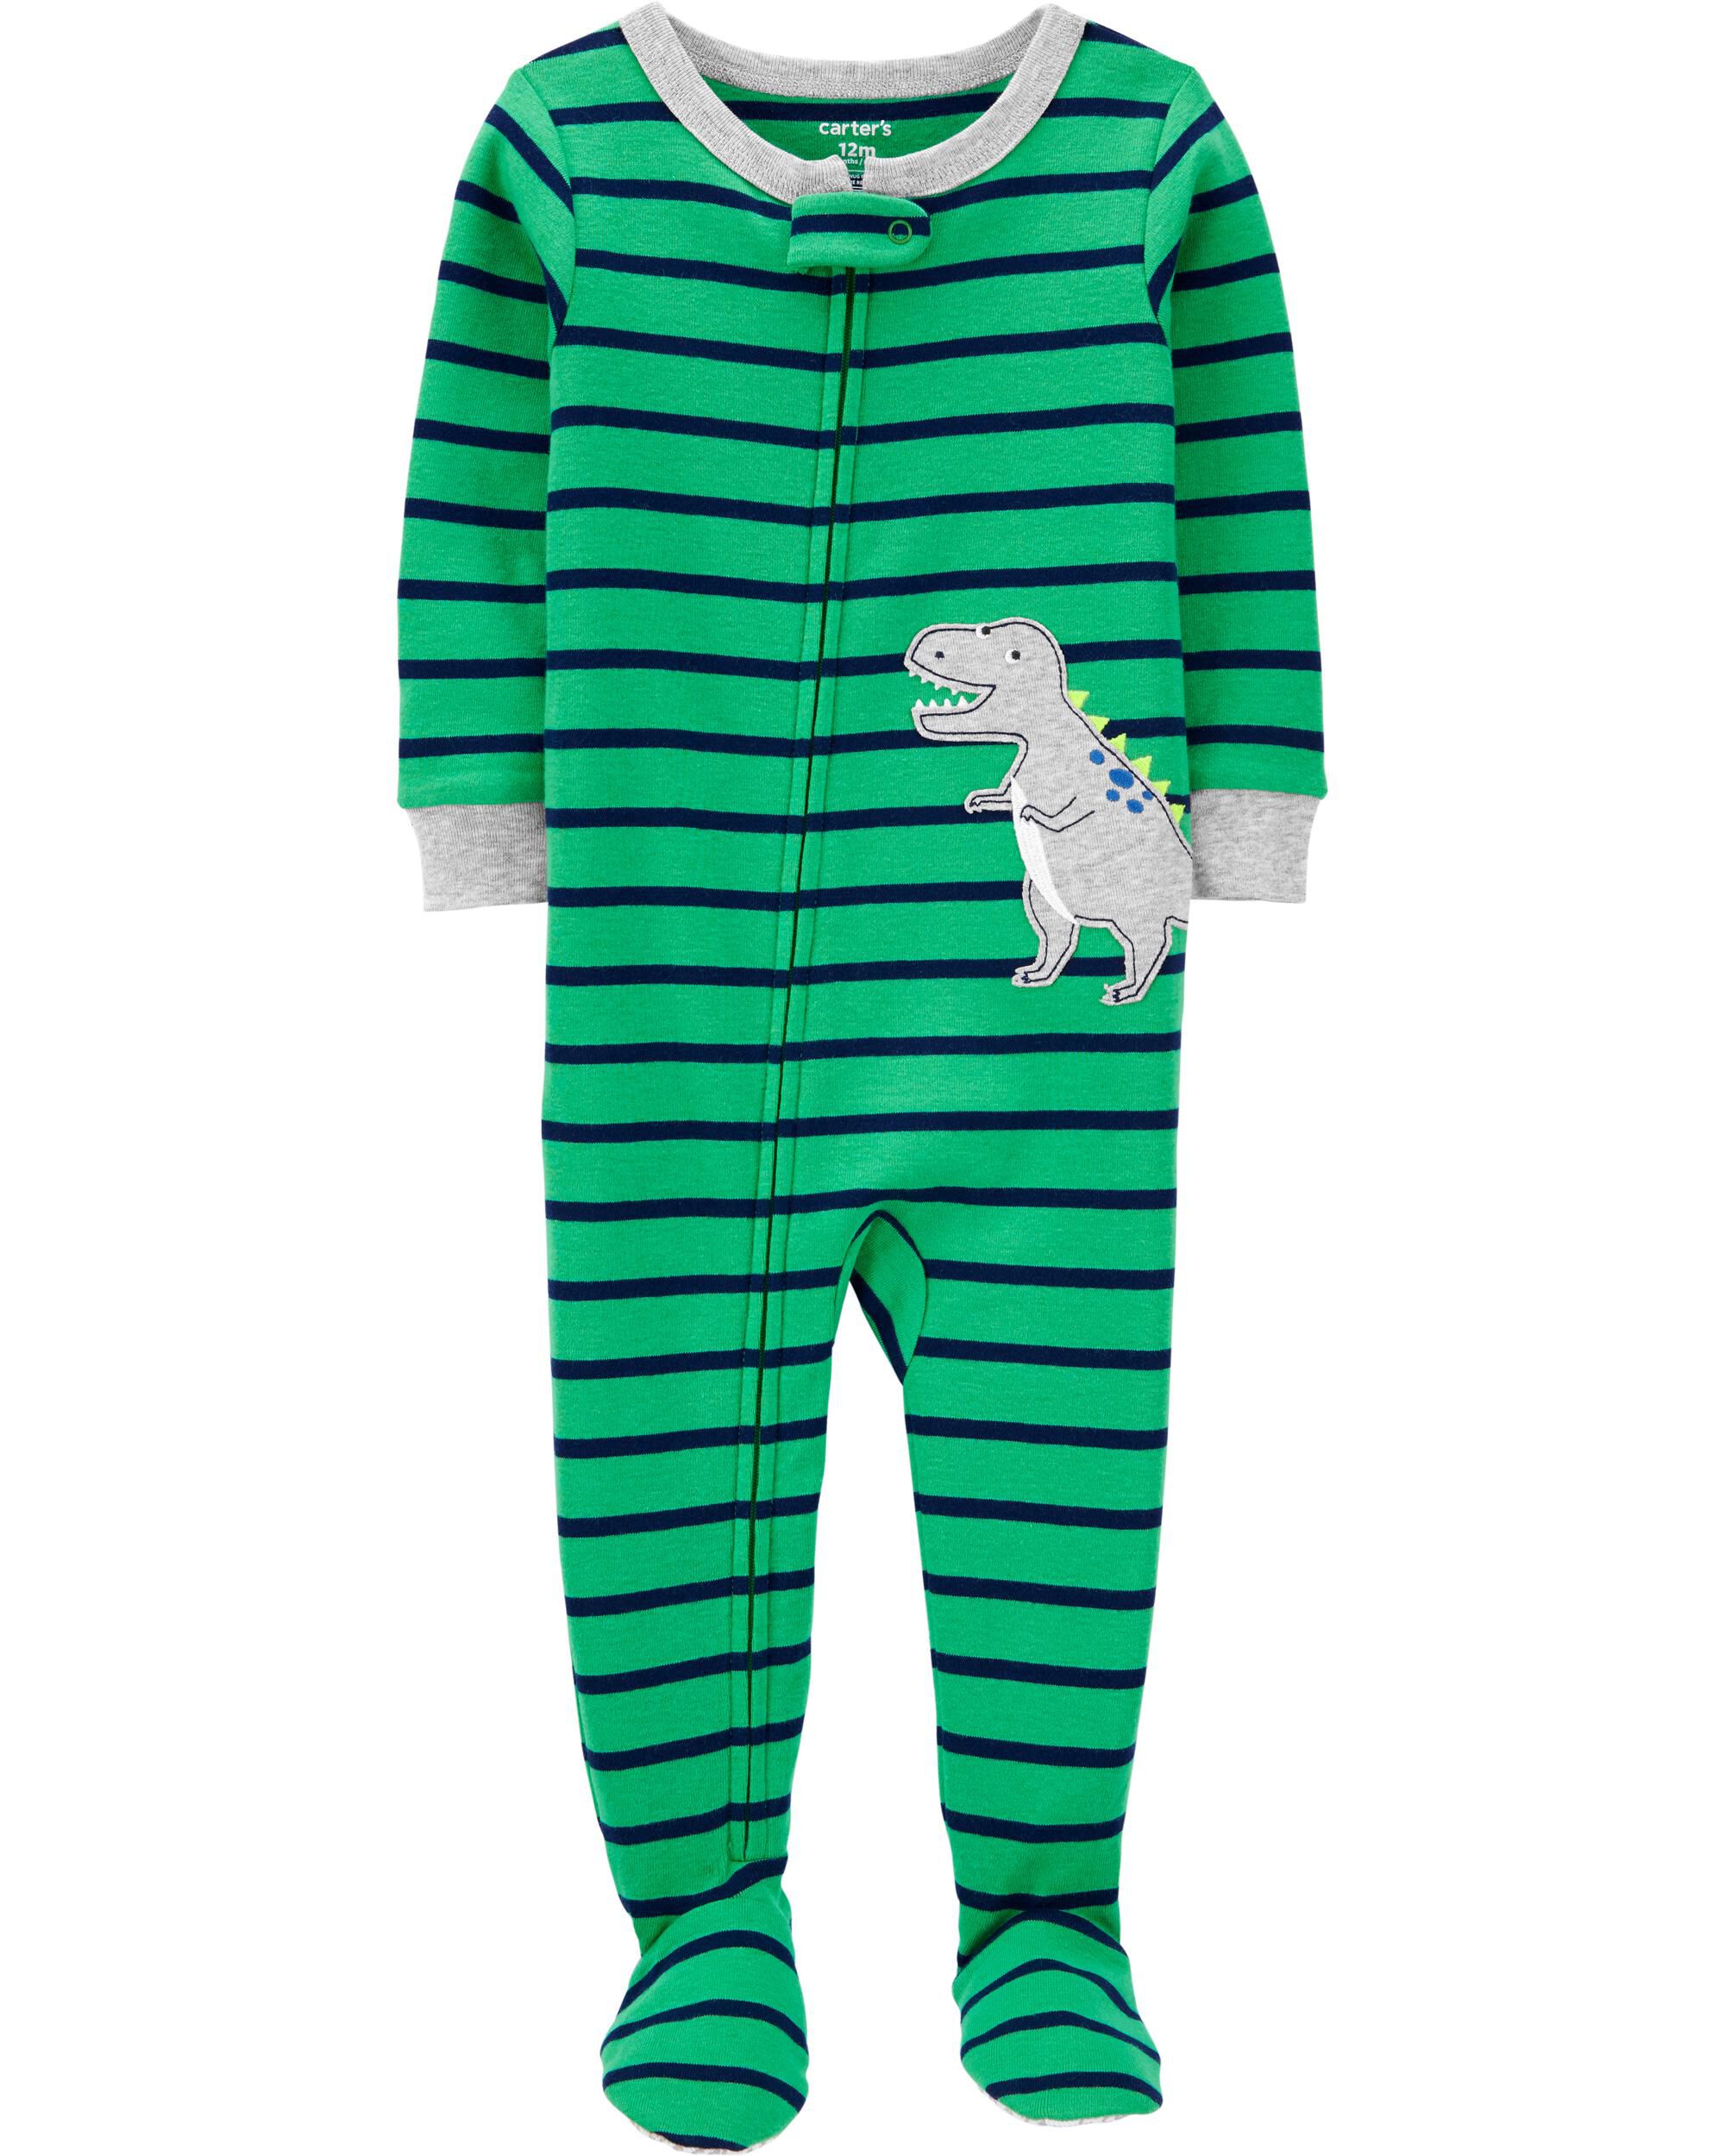 carter's dinosaur footed pajamas